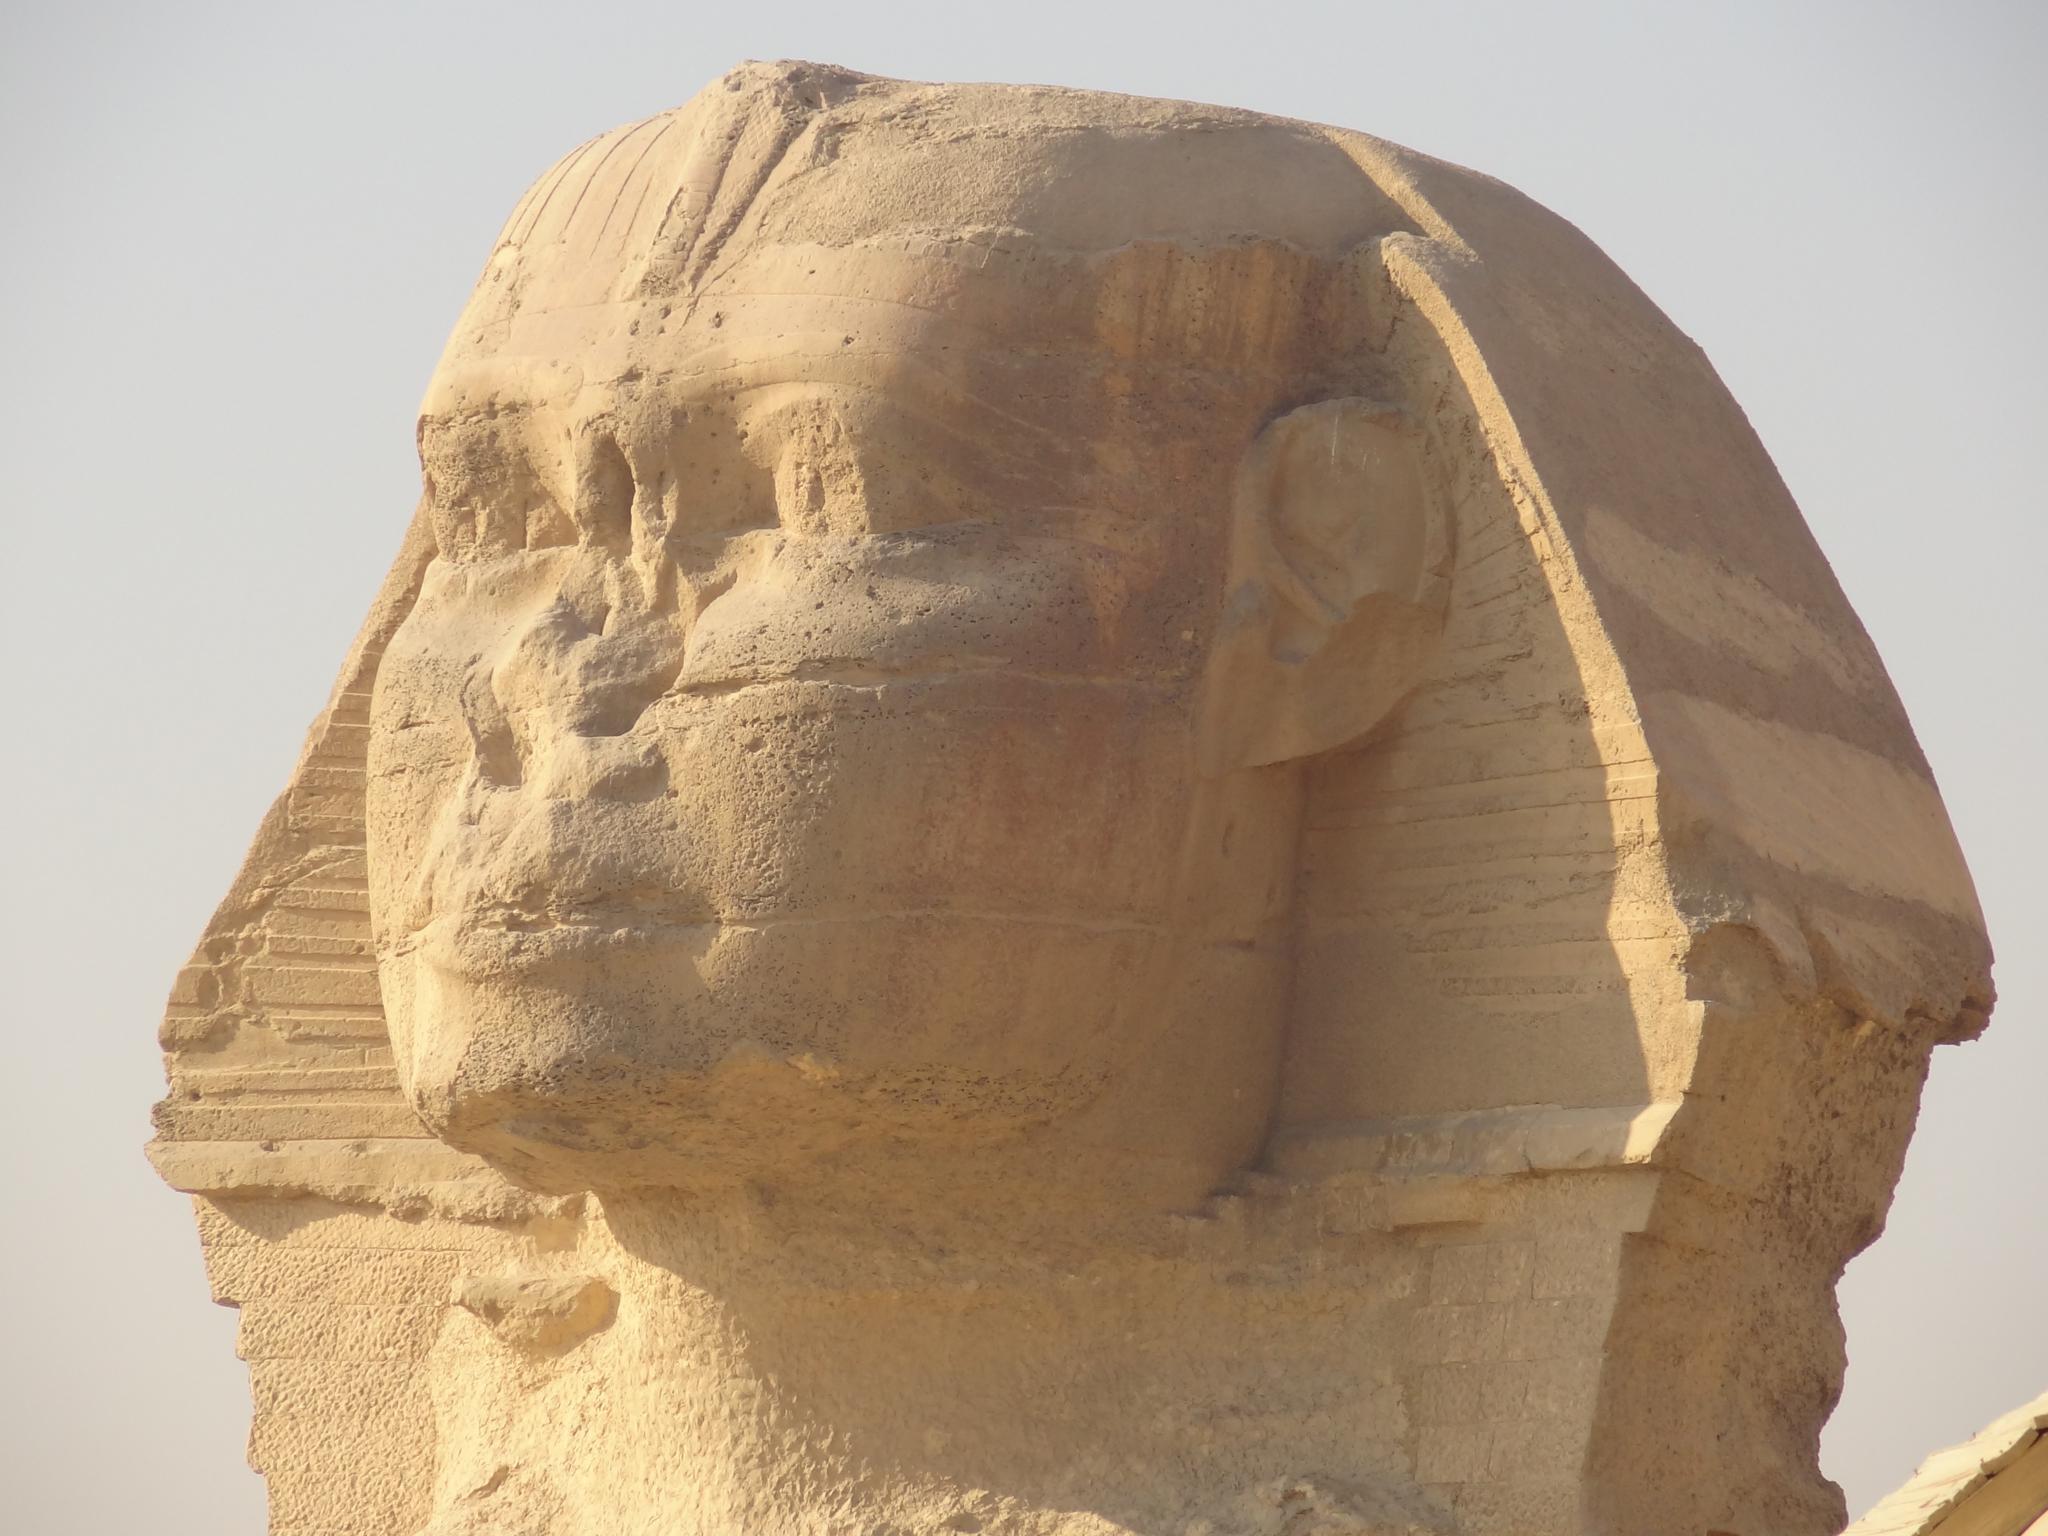 Egito esfinge rosto e pirâmide em Gizé fotos, imagens de